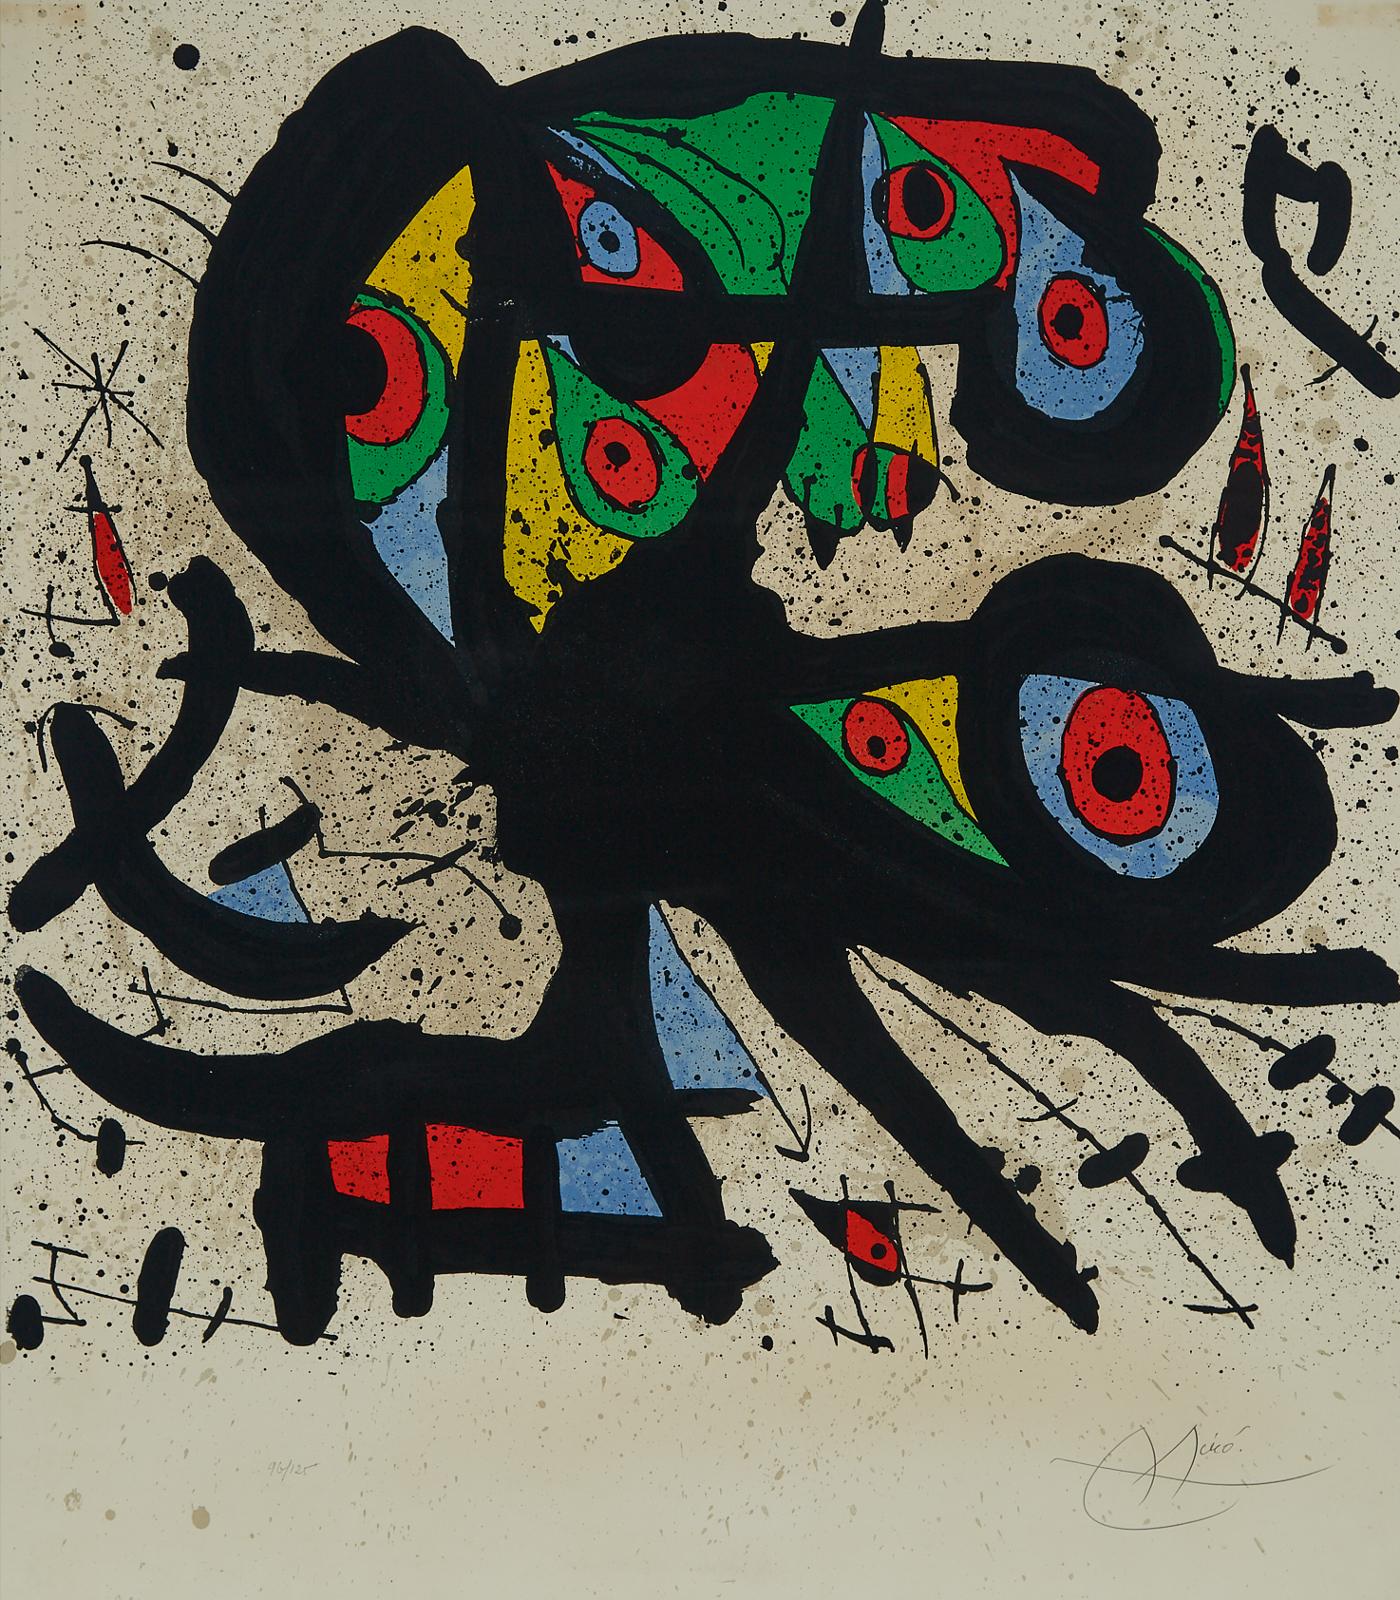 Joan Miró (1893-1983) - AGORA I, 1971 [MOURLOT, 704]